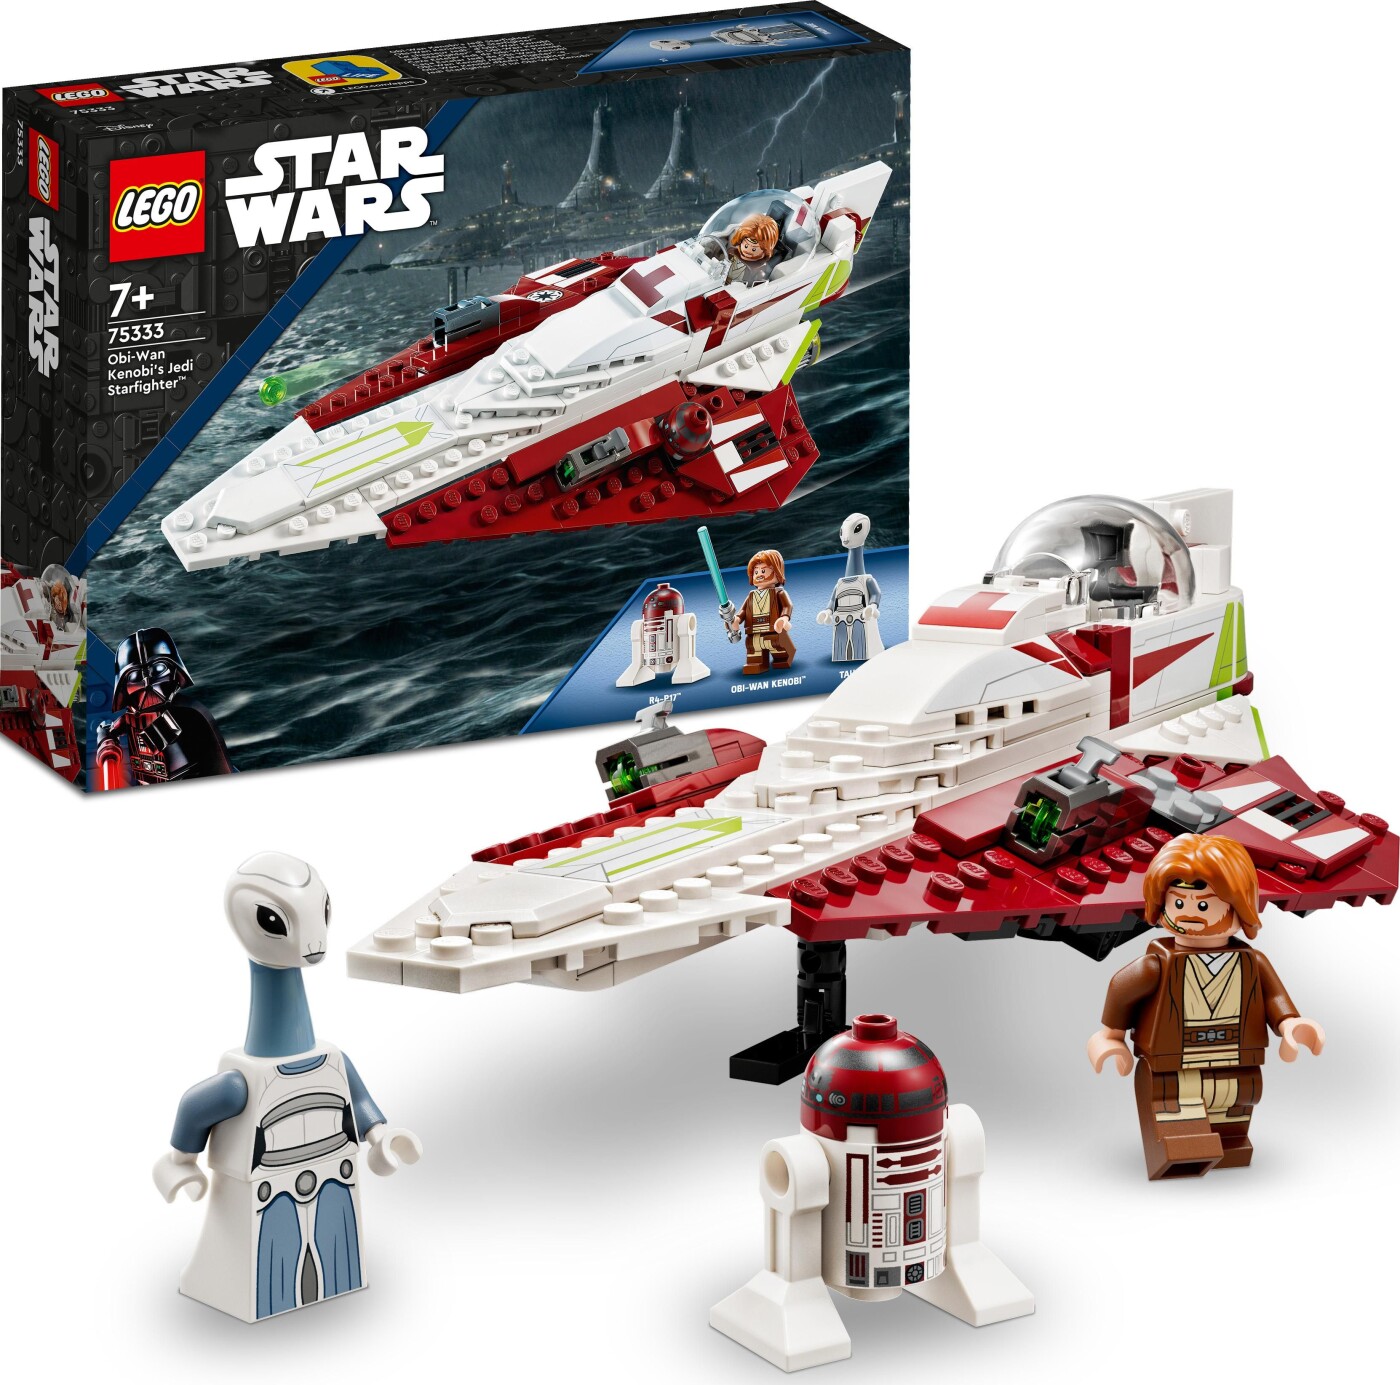 Billede af Lego Star Wars - Obi-wan Kenobis Jedi Stjernejager - 75333